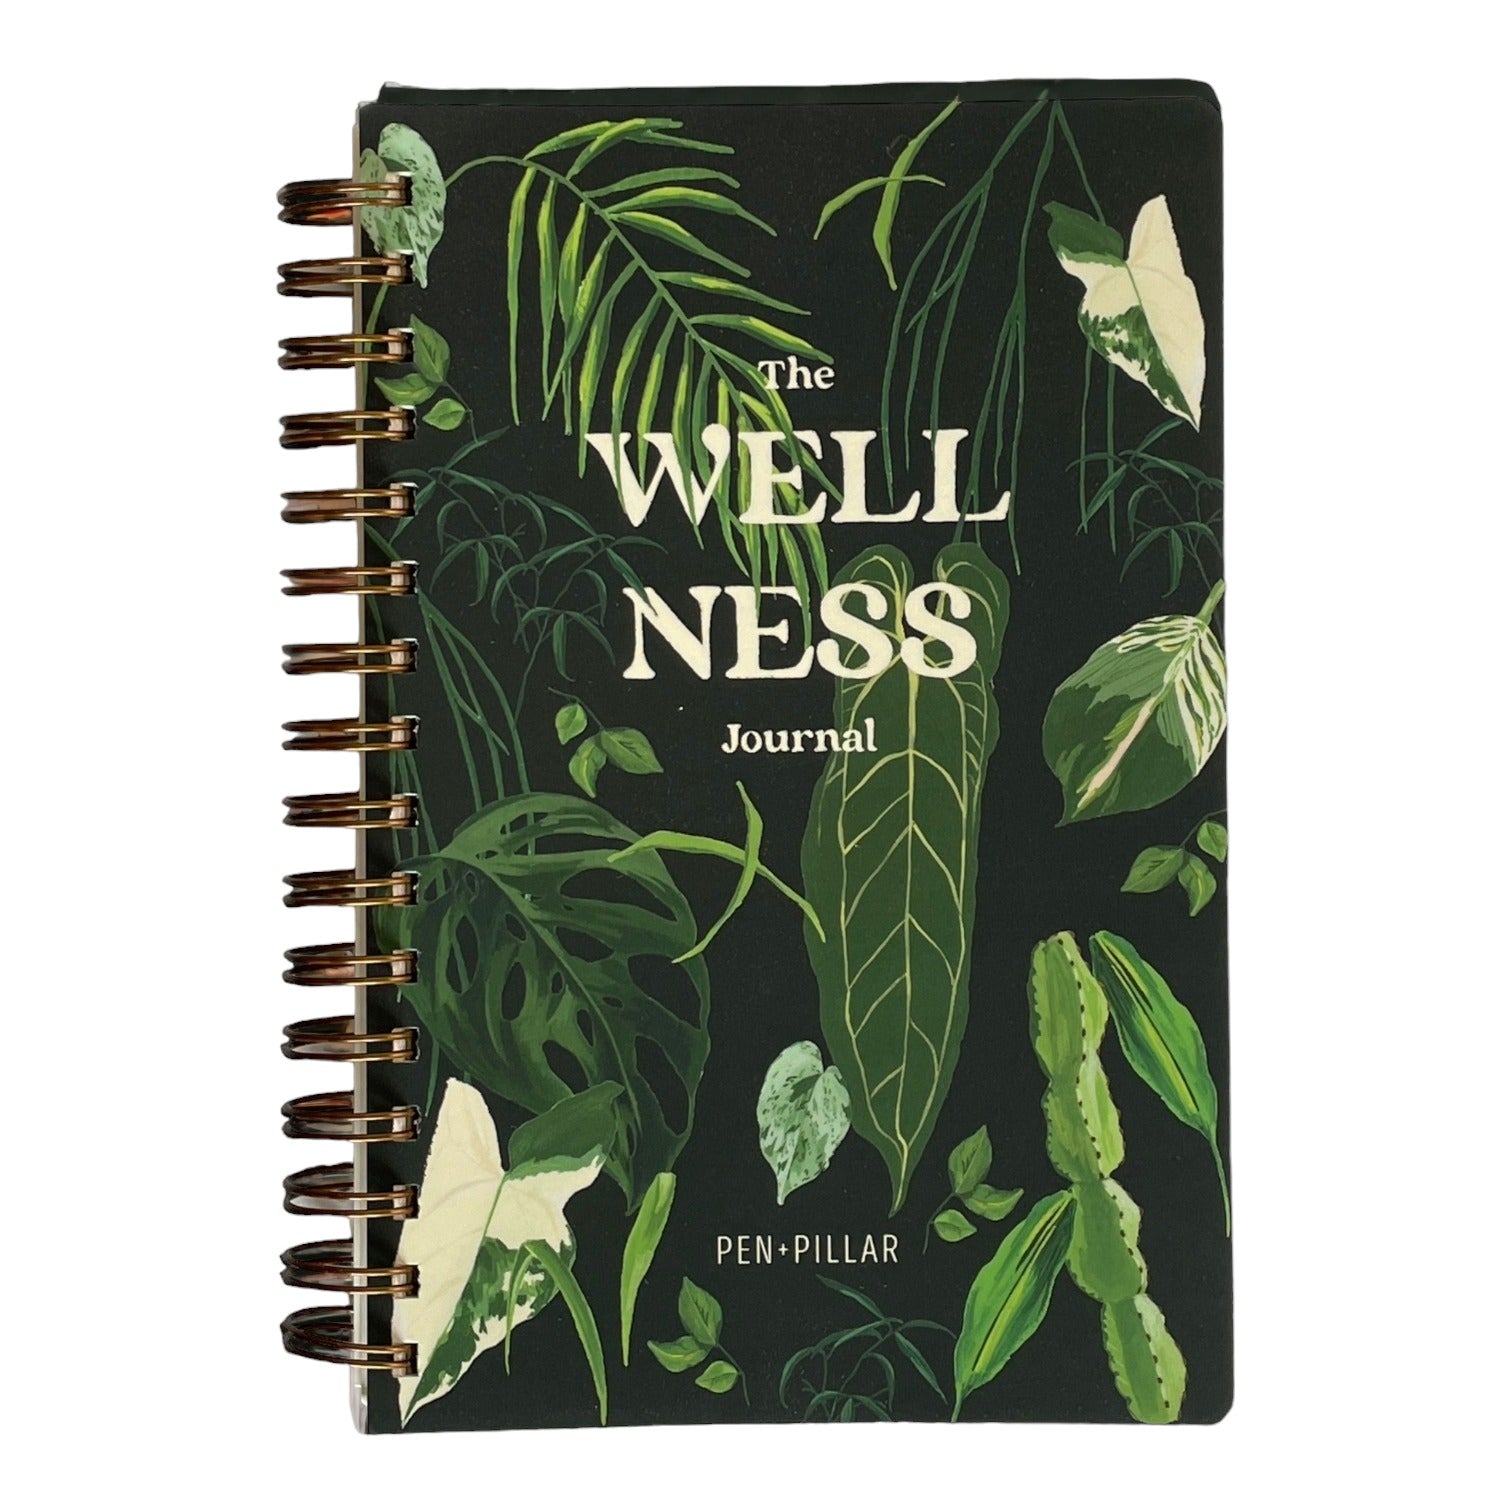 The Wellness Journal from Pen + Pillar